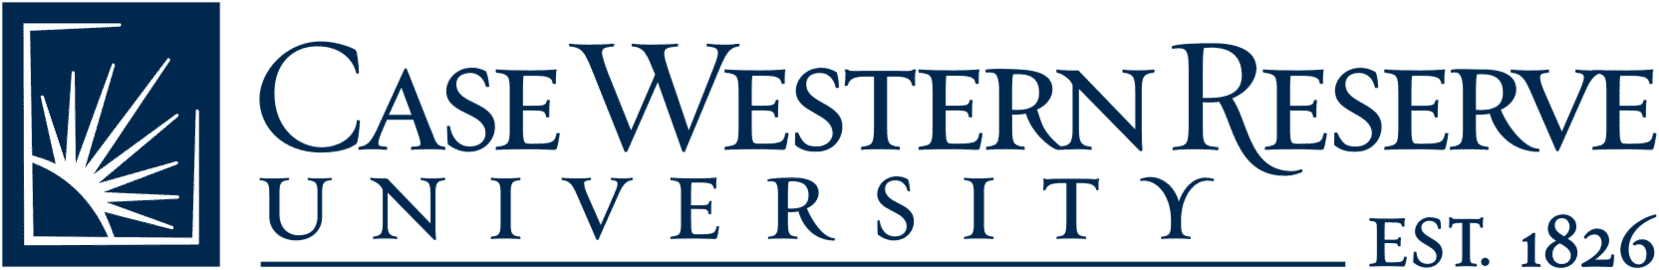 Case Western Reserve Univeristy